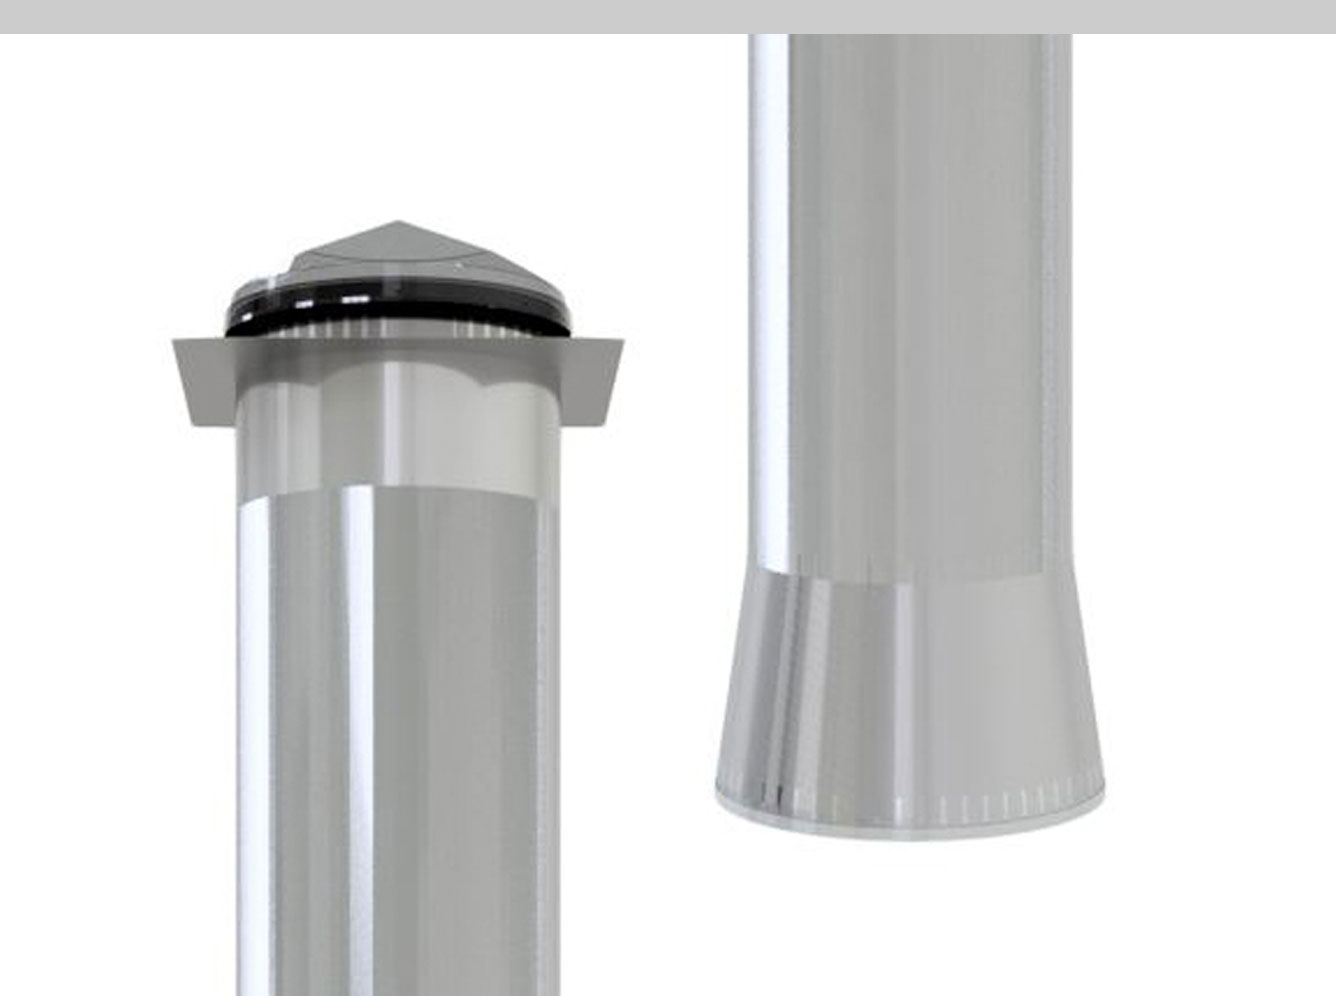 Esquema Composição: 
1x Kit Tubo Solar de diâmetro 750
2x extensão tubo reflector 1225 
1x Expansão TS de 530 para 1000
1x difusor Low Sphere 1000